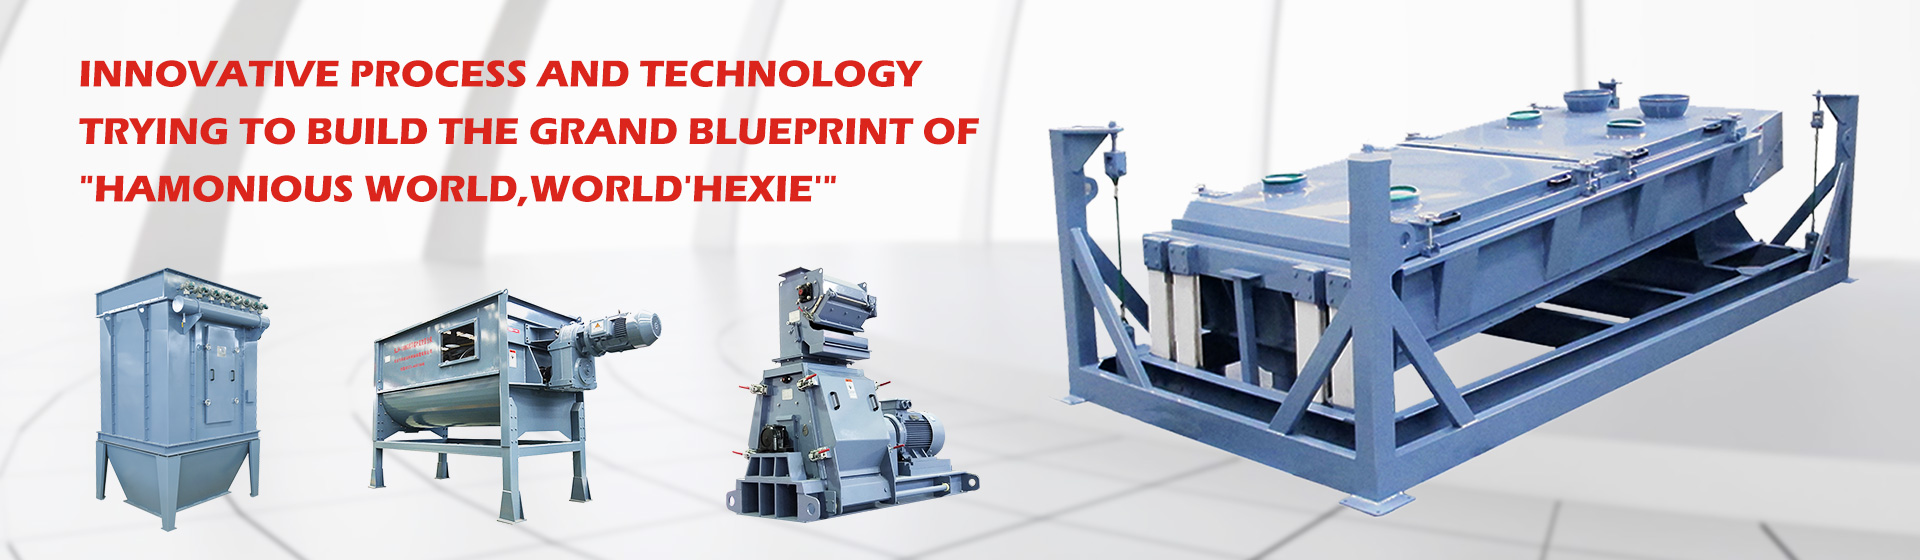 Xinxiang Hexie Feed Machinery Manufacturing Co.Ltd